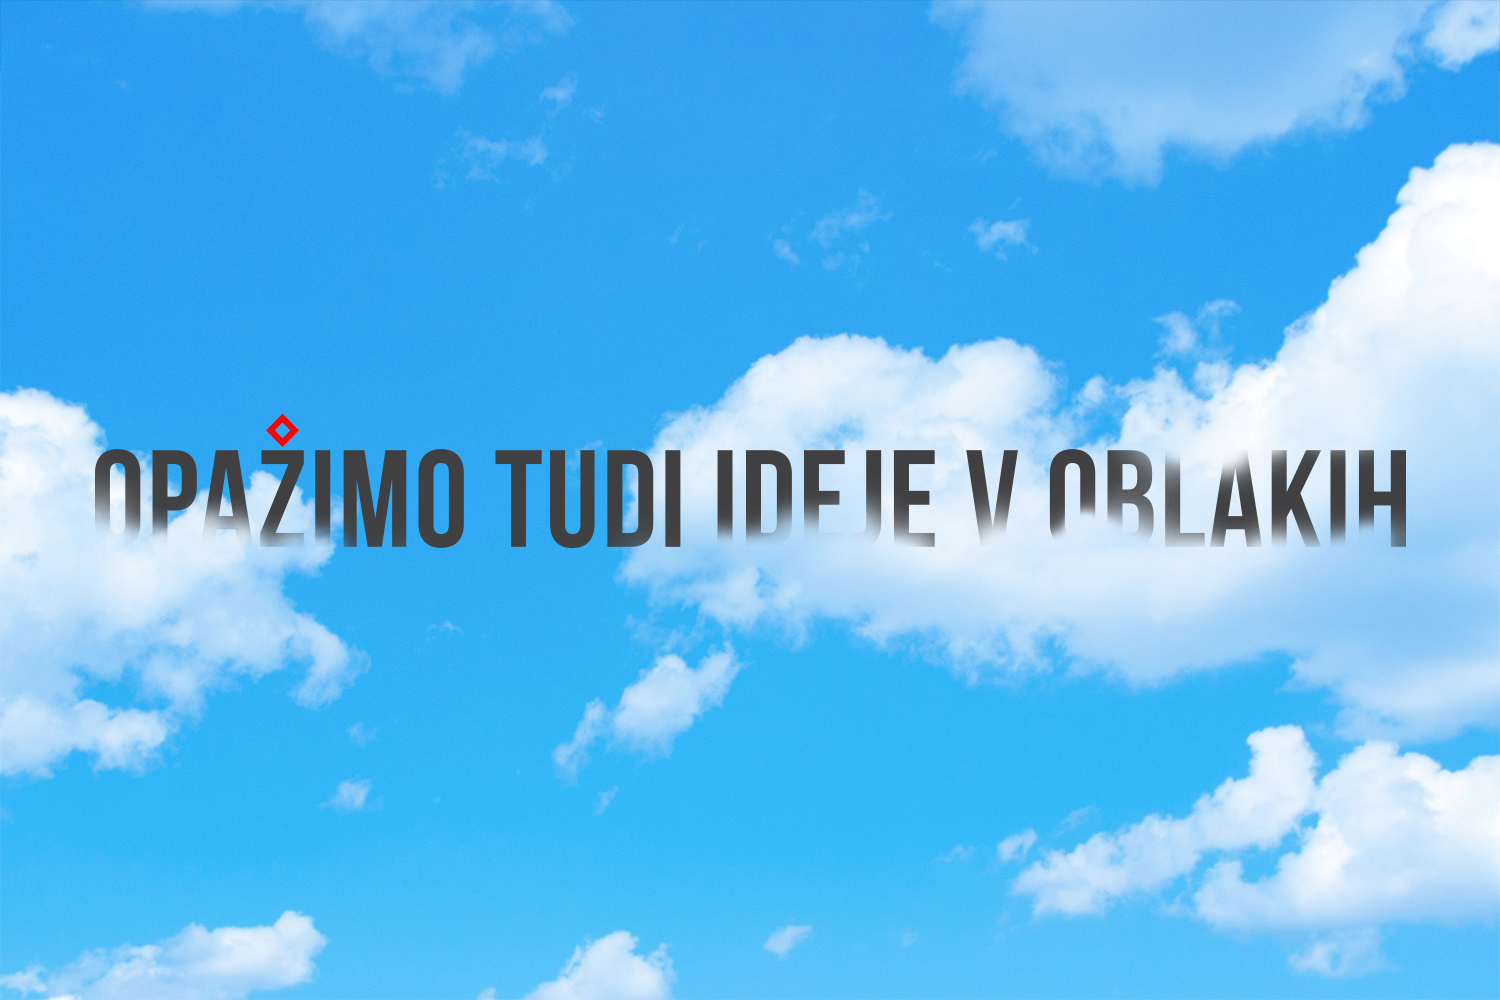 Slogan na grafični podlagi neba z oblaki